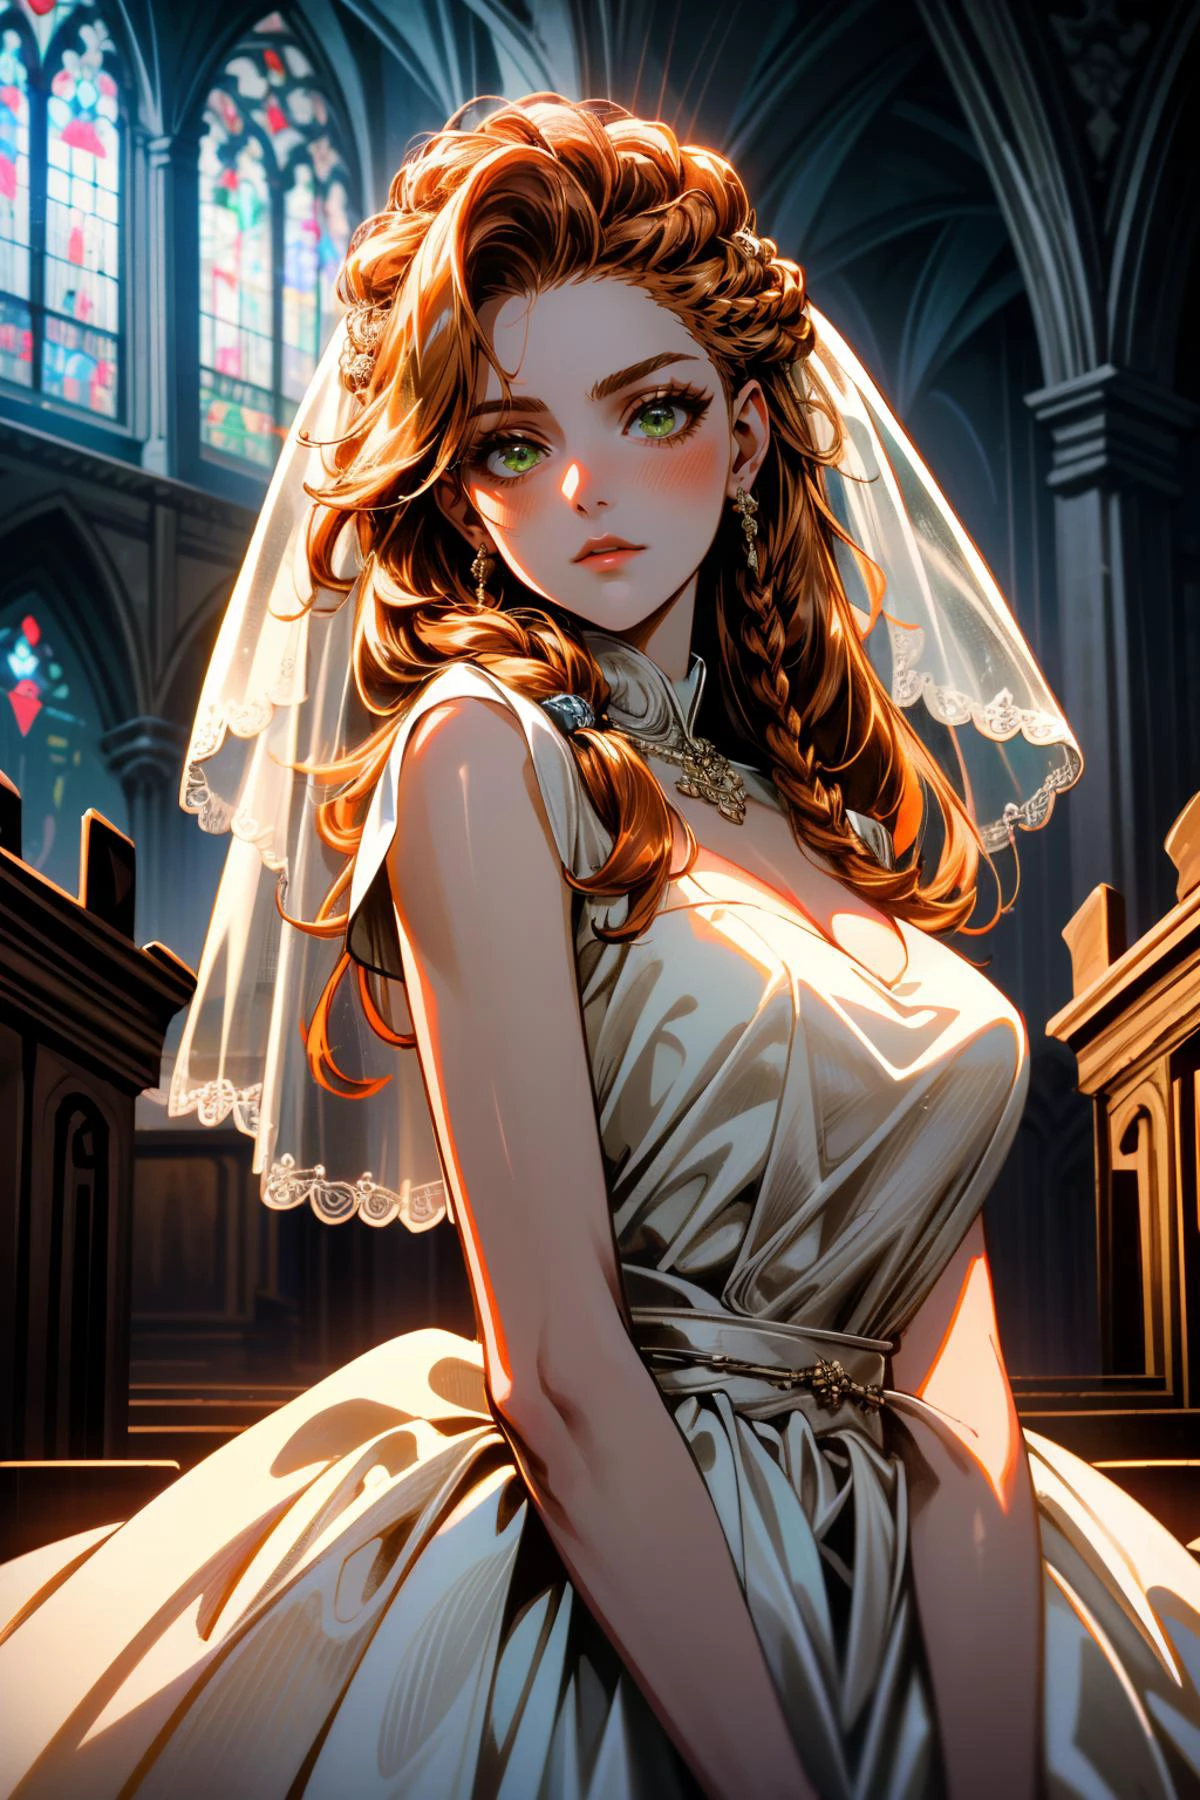 ((مفصلة للغاية, تحفة, سخافات))
 HFWAloy, 1فتاة, شعر برتقالي, عيون خضراء, شعر طويل, جديلة, يرتدي فستان الزفاف, الحجاب الزفاف, داخل كنيسة